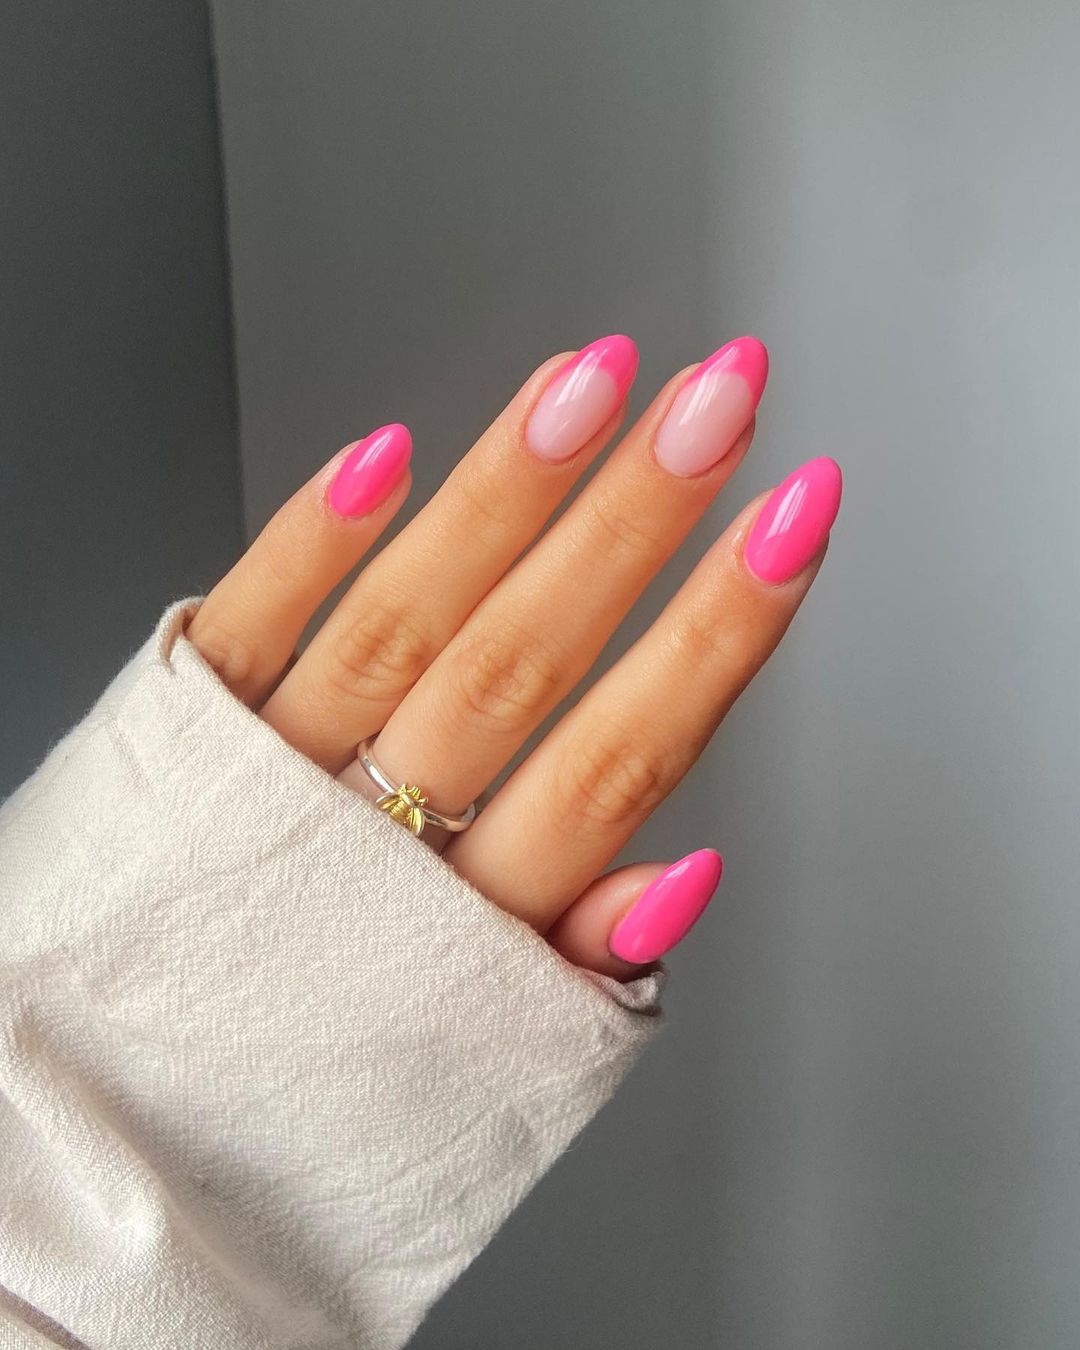 The fantasy of very long sharp nails #longnaturalnails #longnails  #dariaicequeen #realnails #naturalnails #modelnail… | Long natural nails, Long  nails, Sharp nails